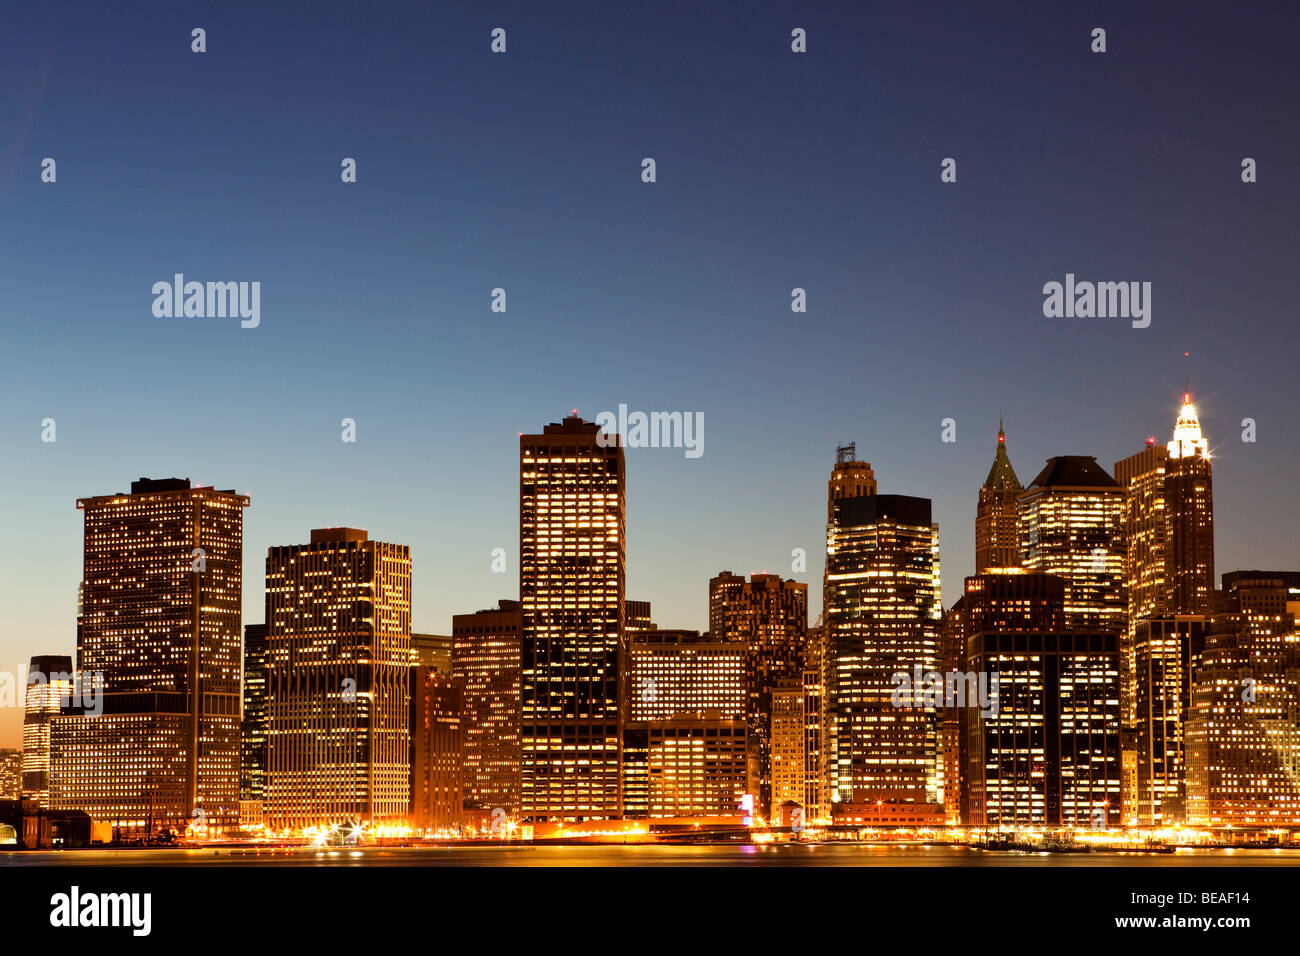 Cityscape at dusk, Manhattan, New York City, NY, USA Stock Photo